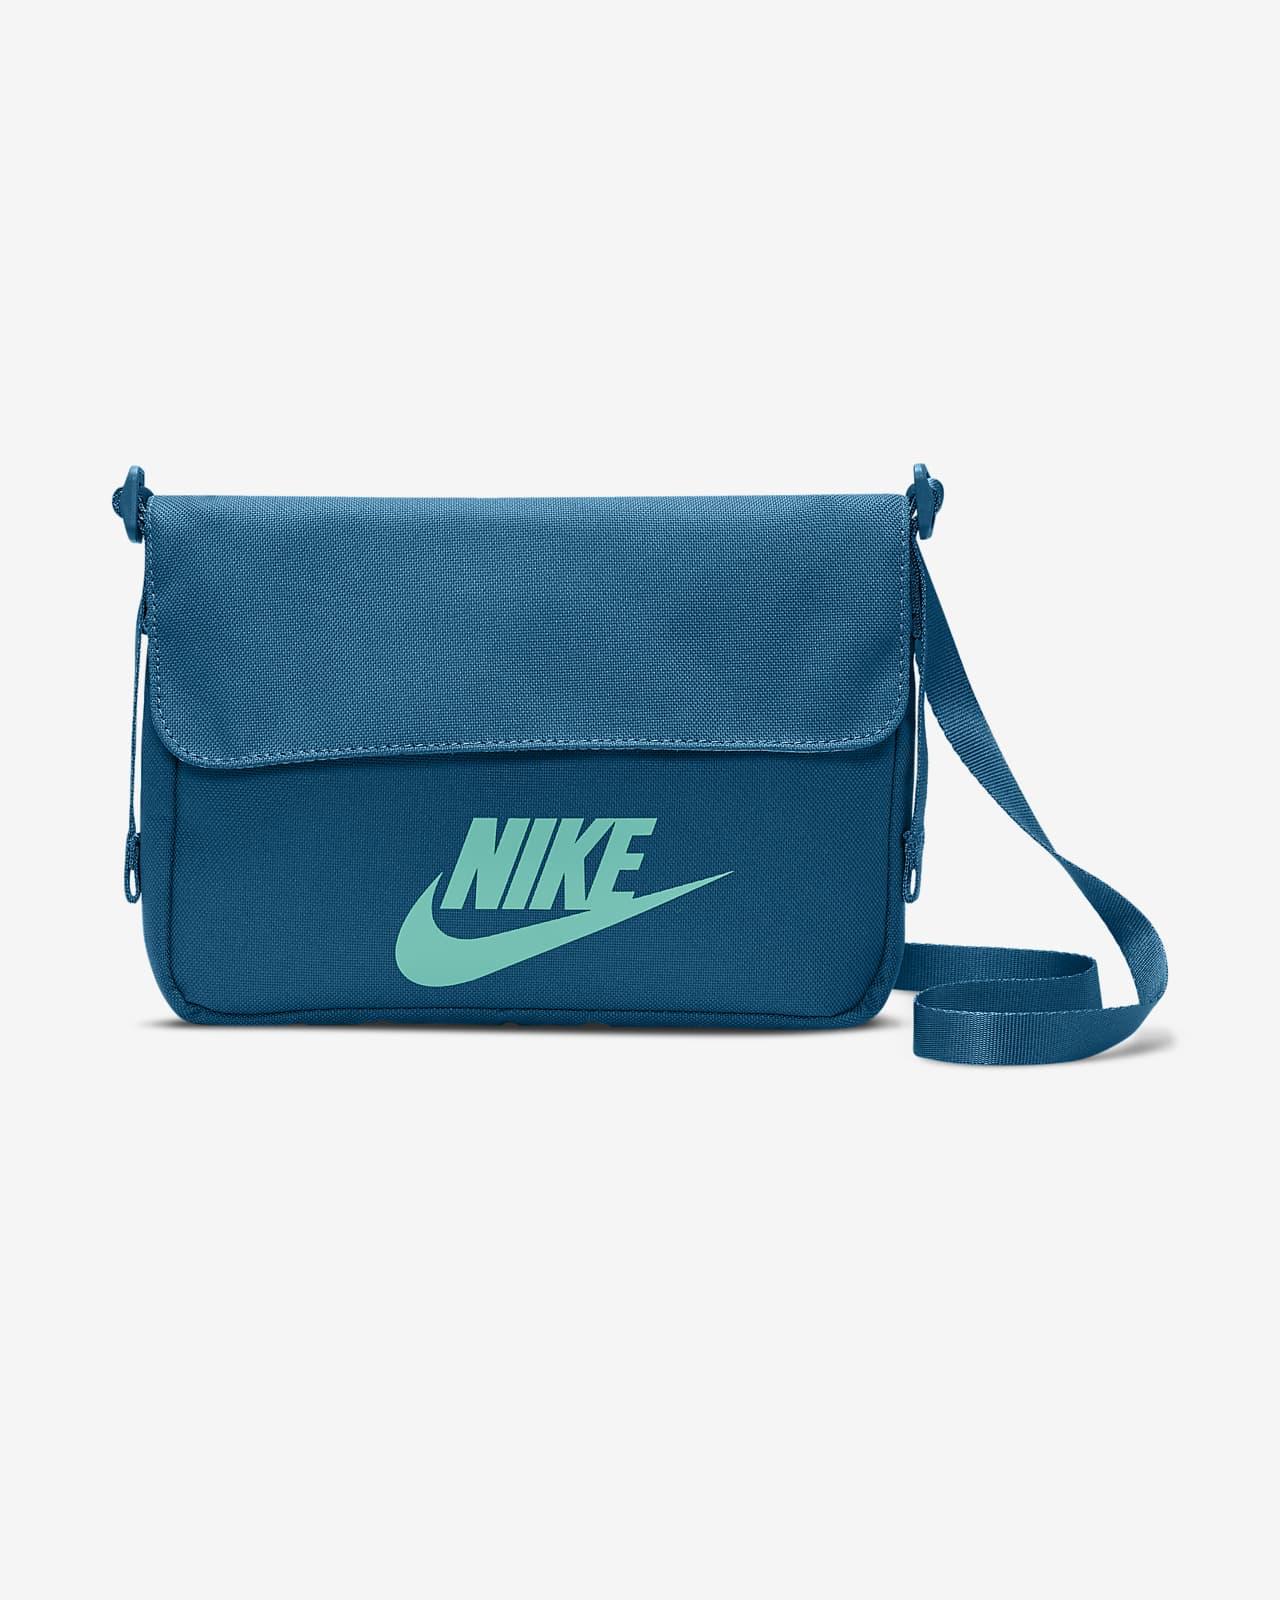 8 กระเป๋า Nike แบรนด์เนมราคาดี หลักร้อยหลักพัน ถูกใจสายสตรีท & สปอร์ต 5